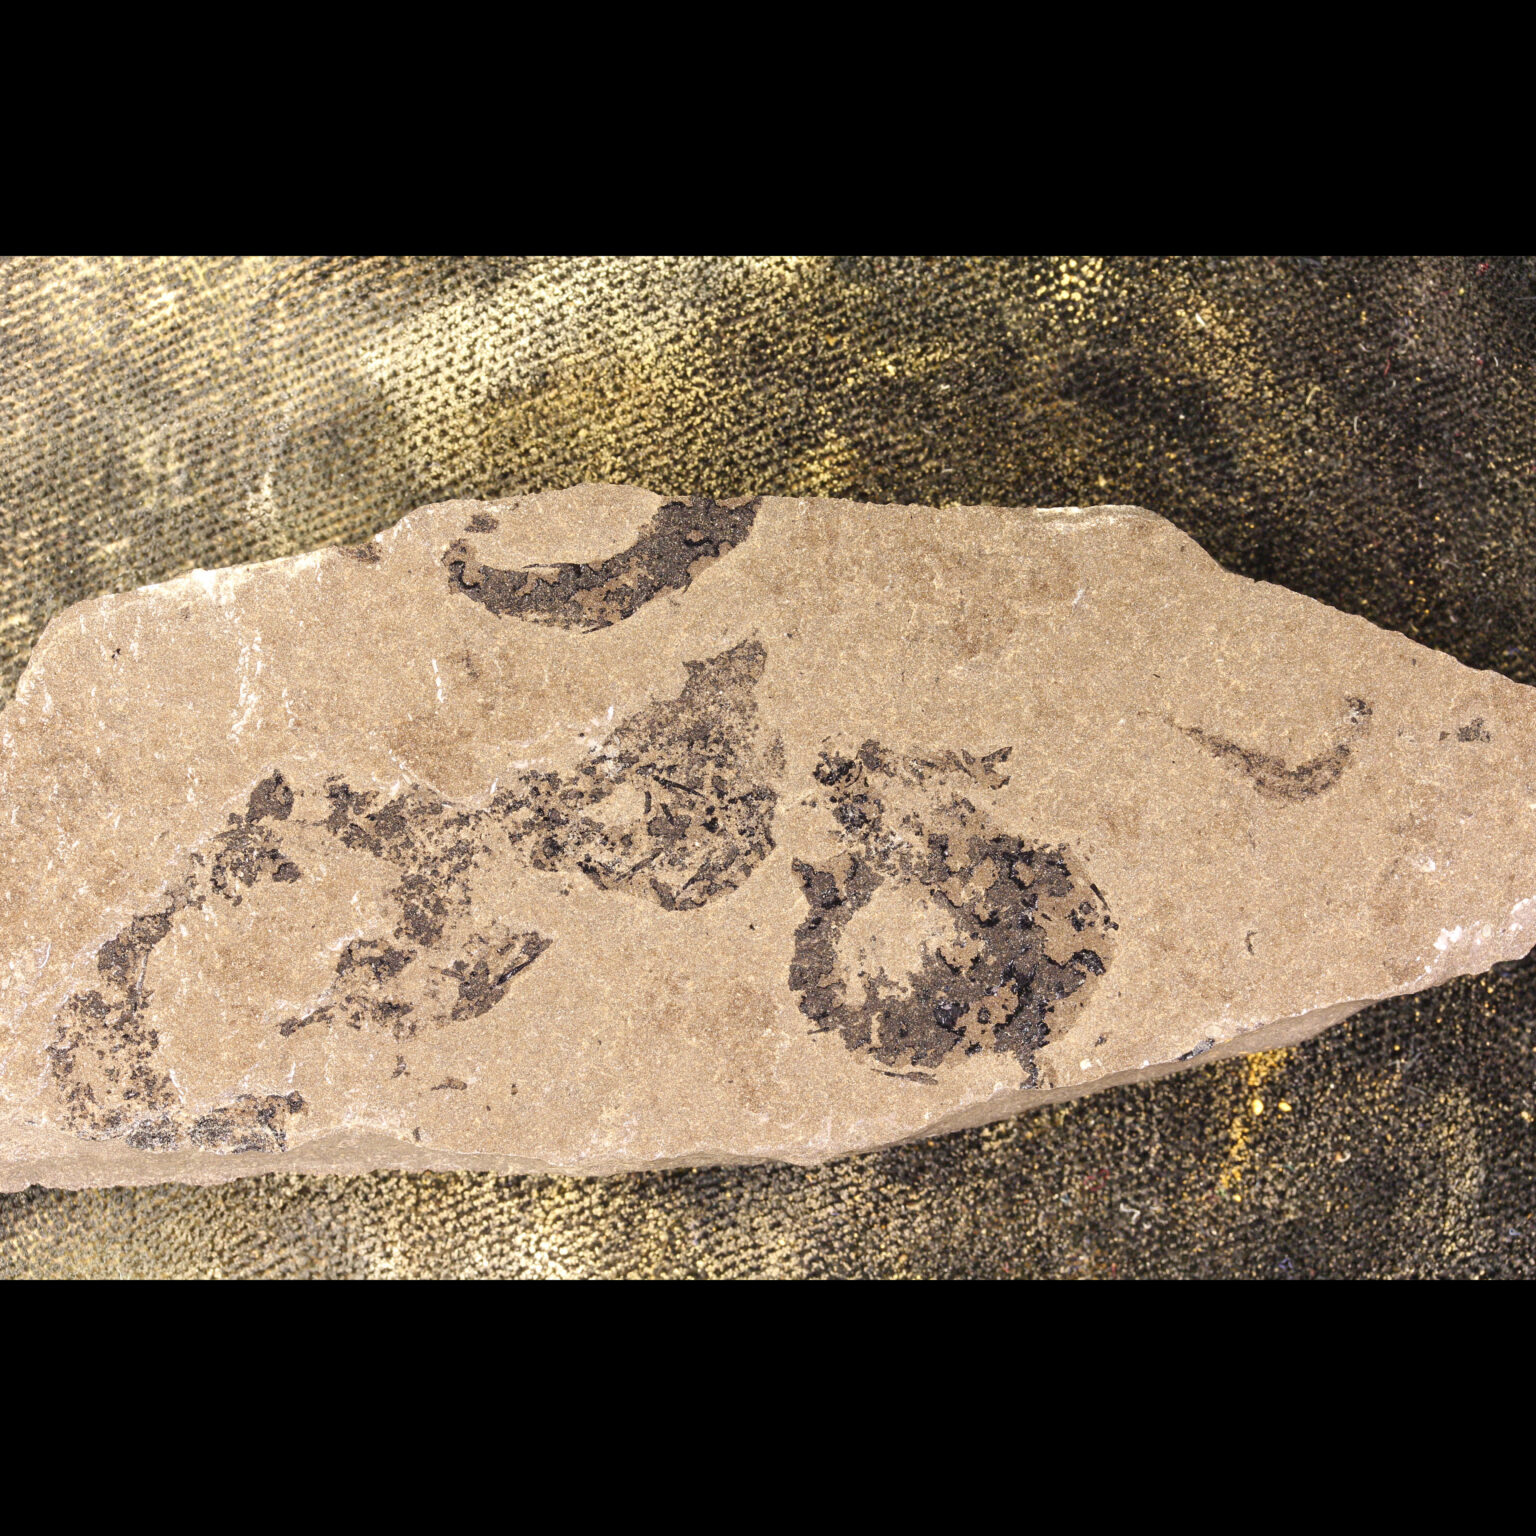 mesacanthus pusillus multi shark fossil